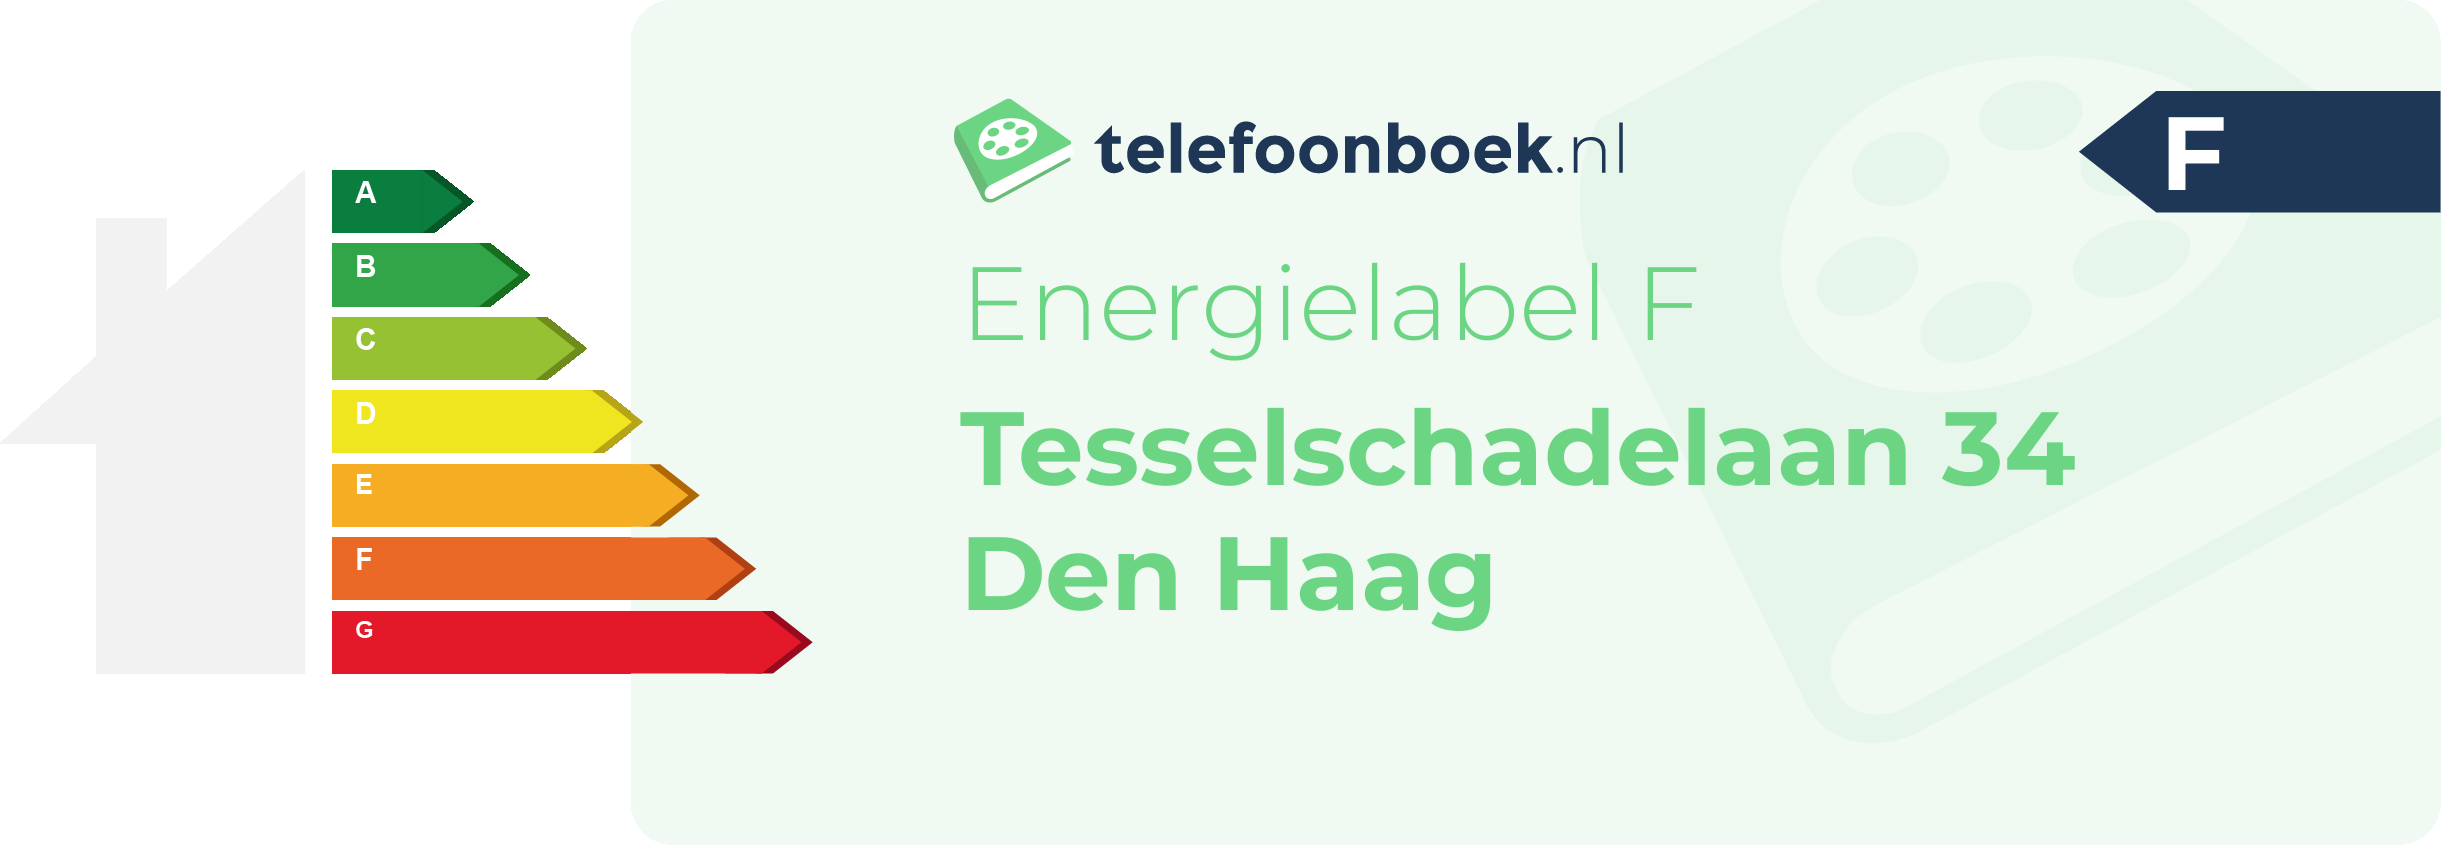 Energielabel Tesselschadelaan 34 Den Haag